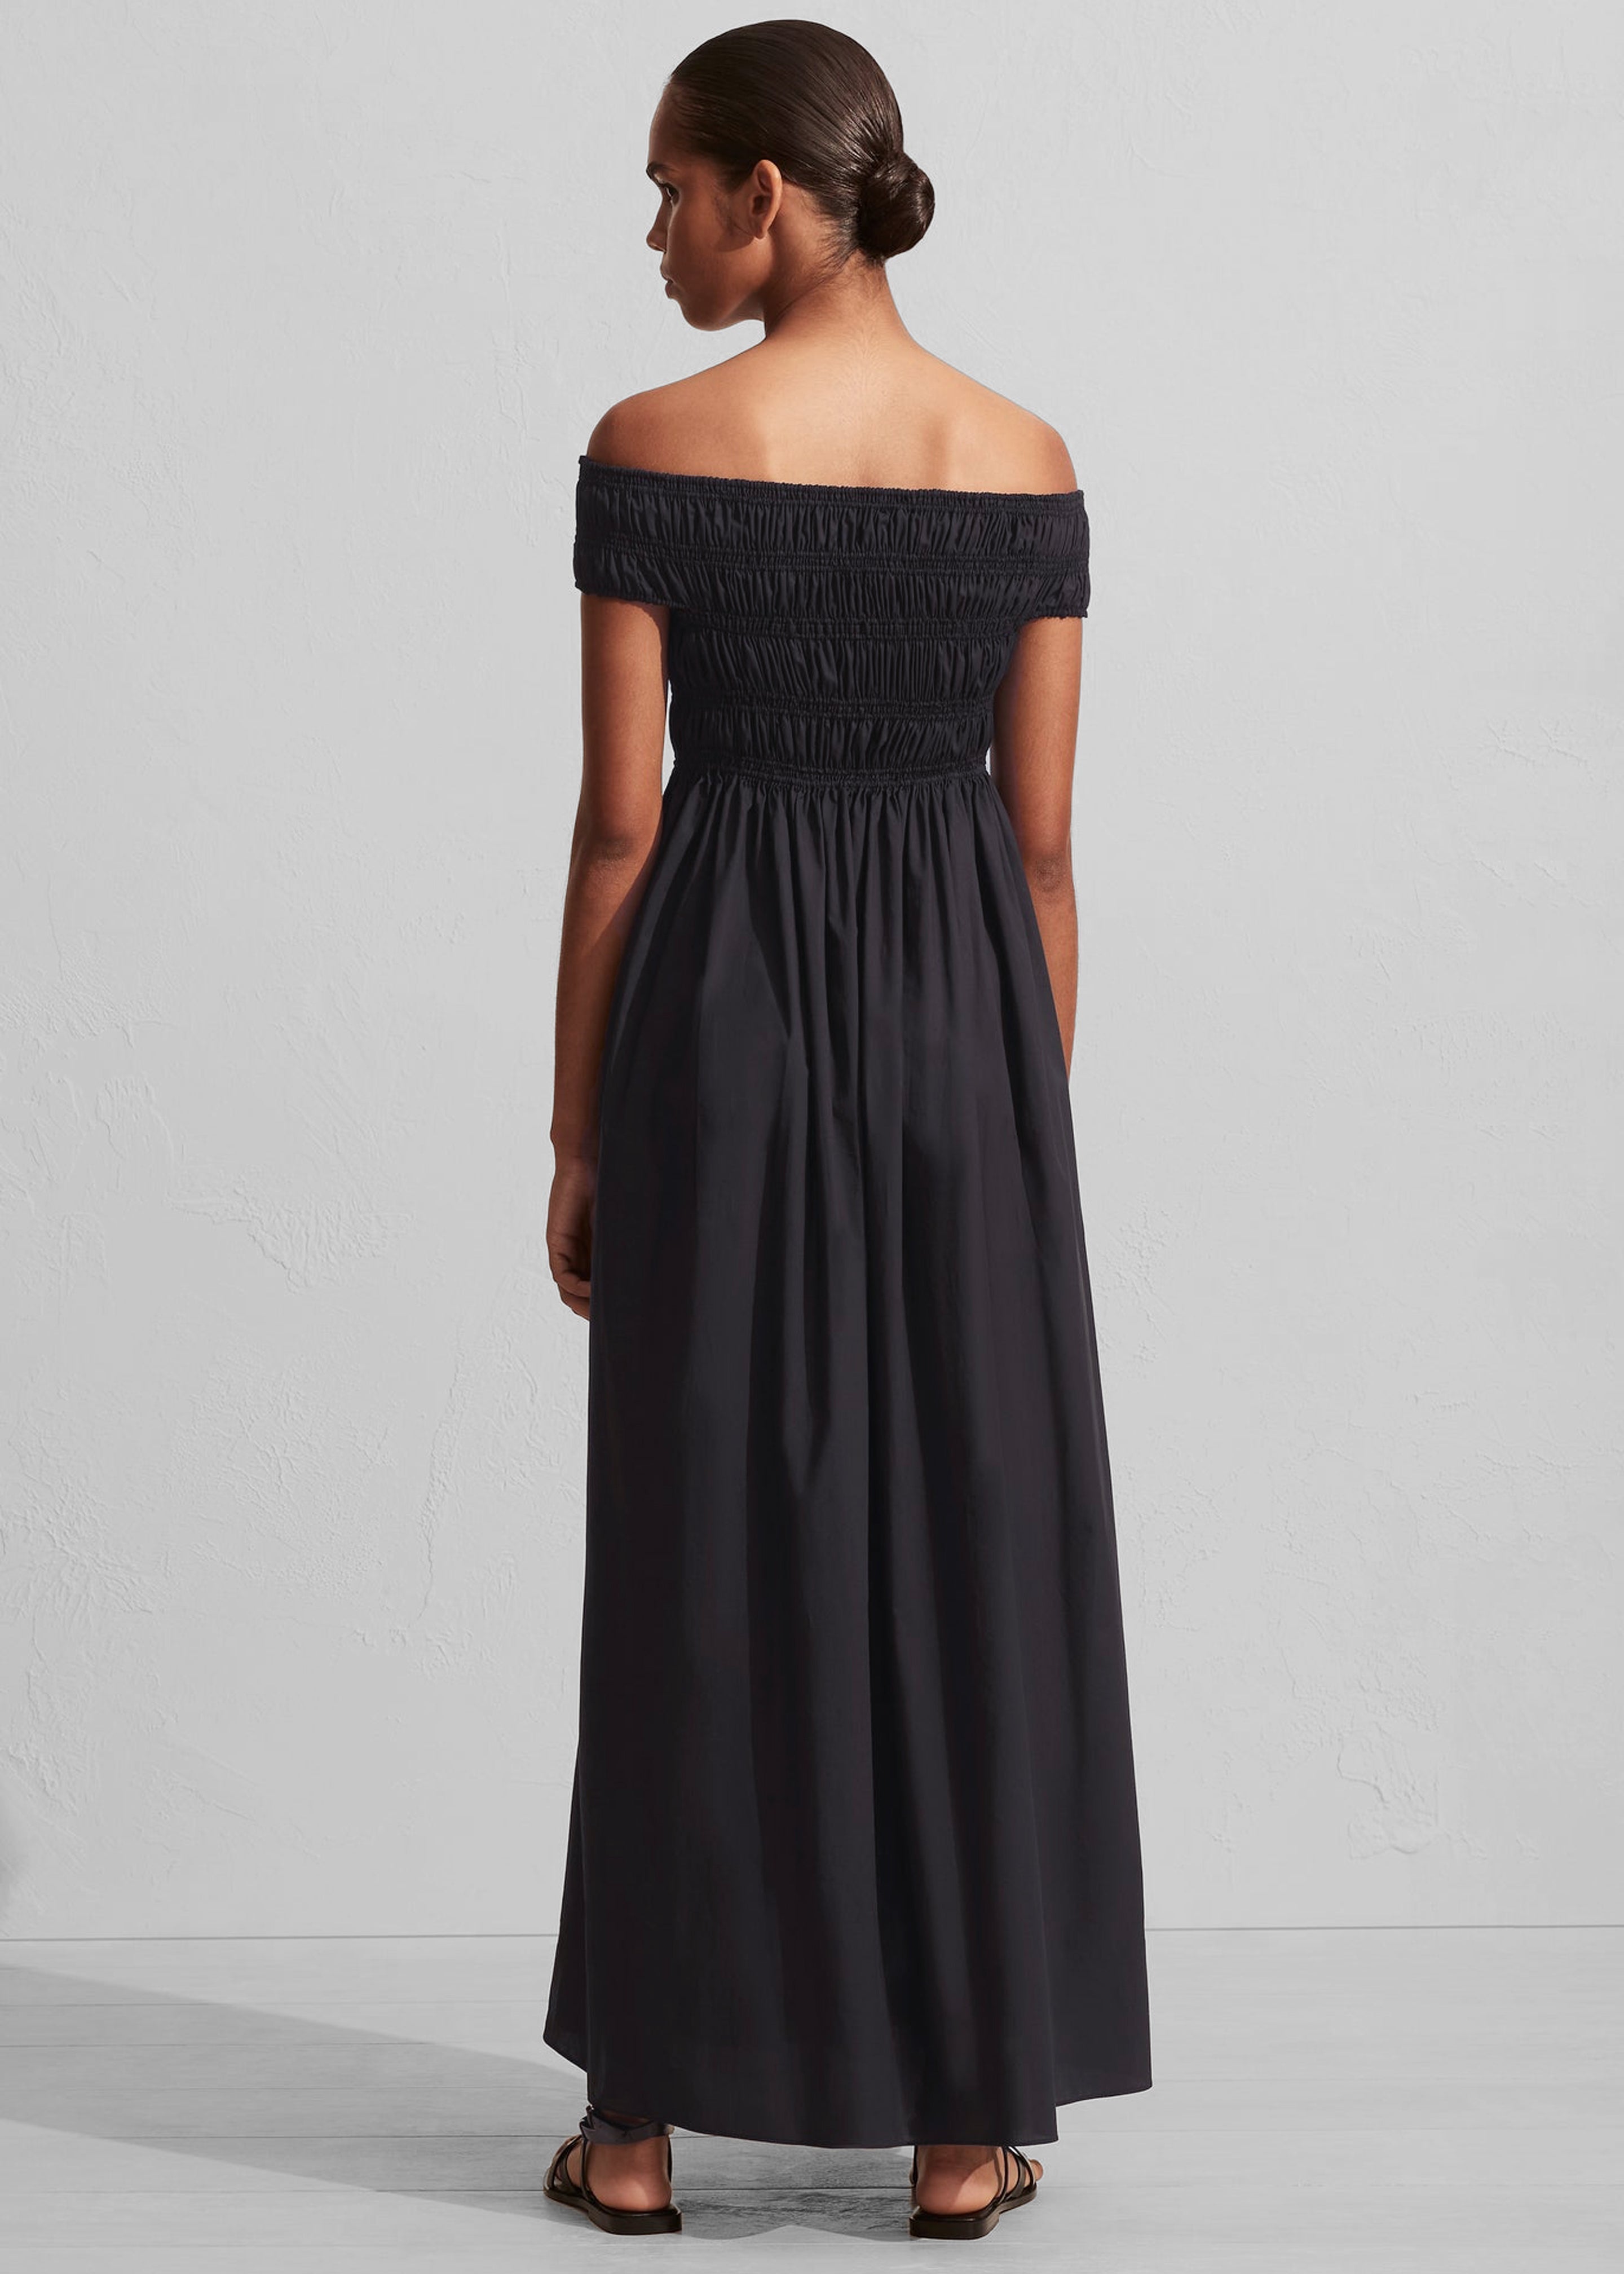 Matteau Shirred Off The Shoulder Dress - Black - 6